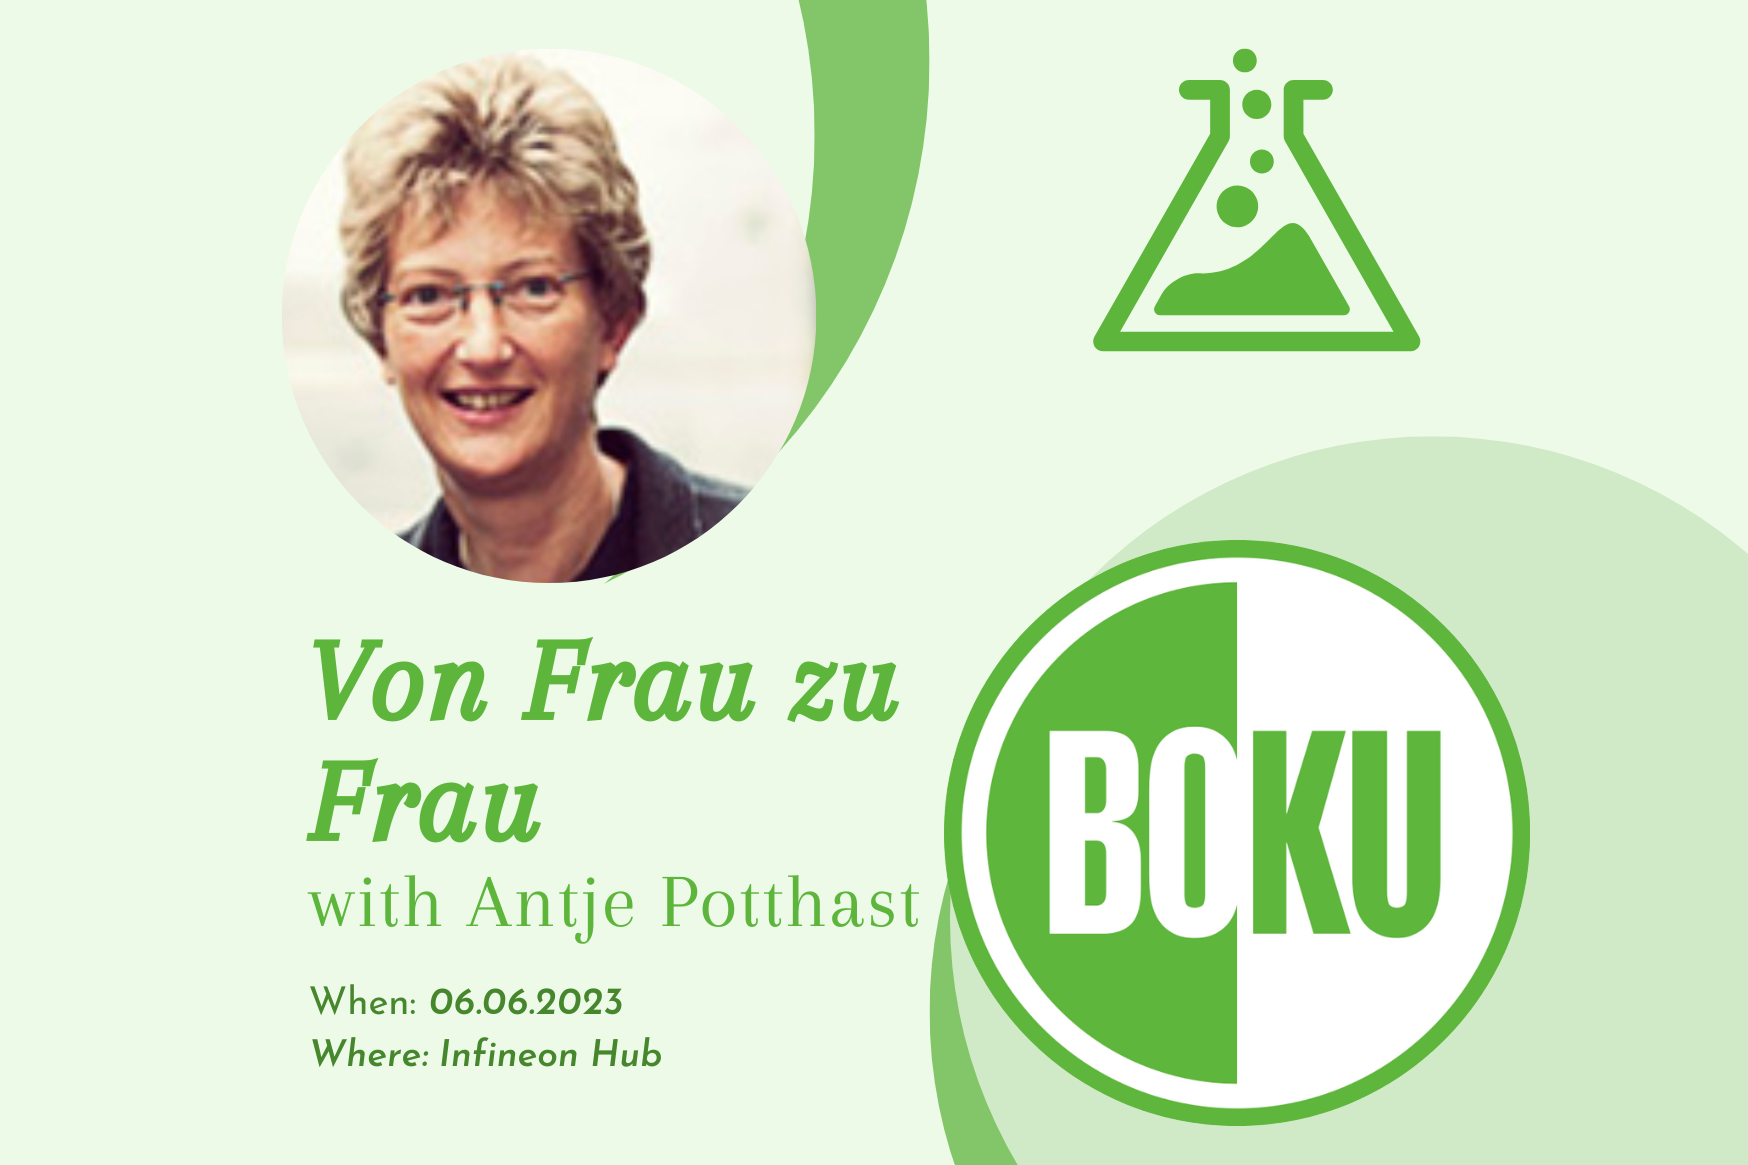 “Von Frau zu Frau” with Antje Potthast